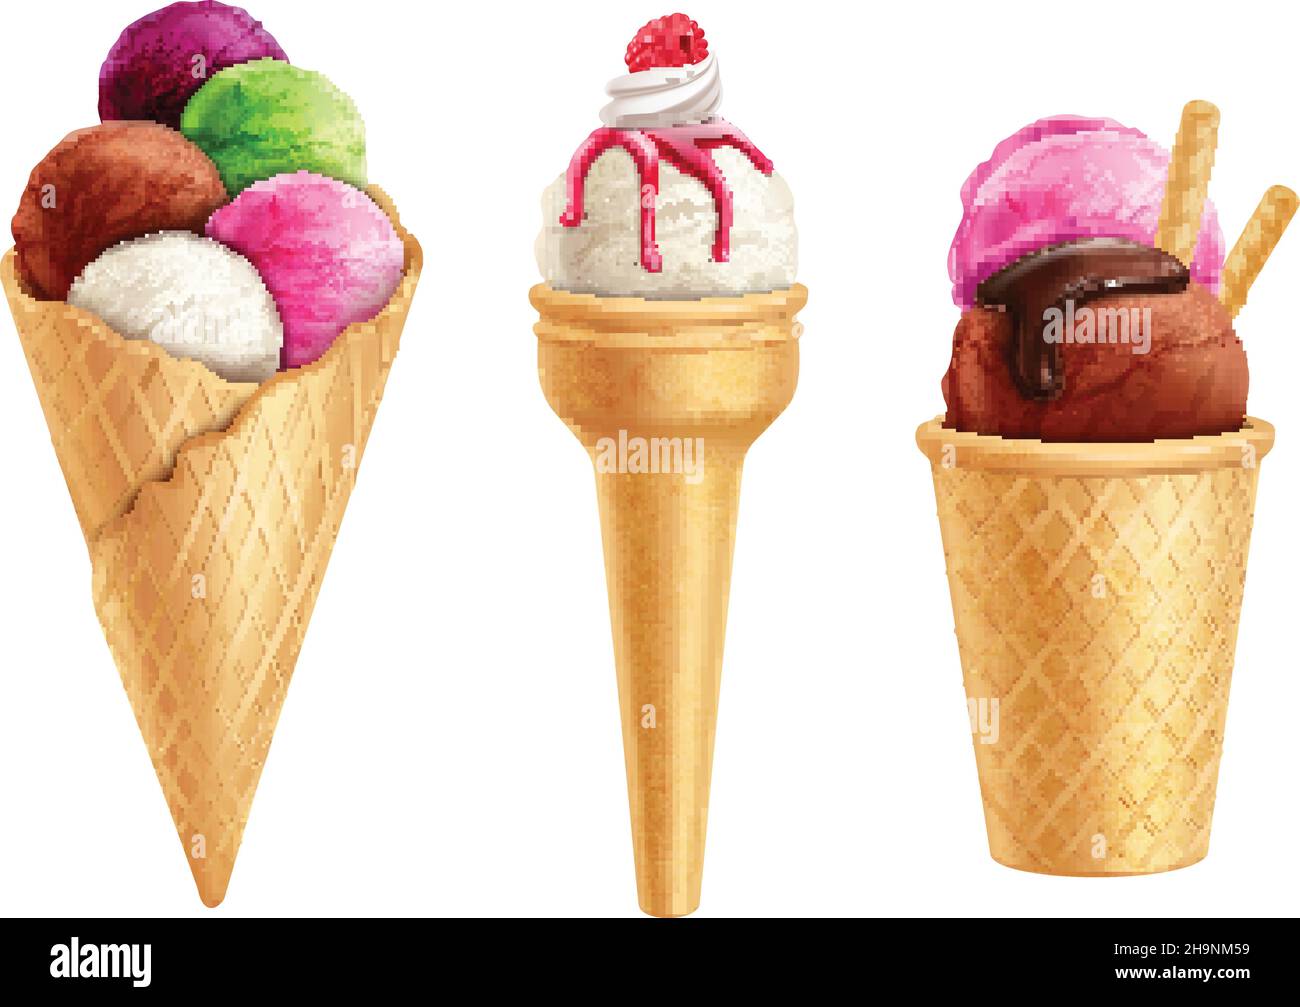 Ensemble de glace réaliste et colorée en gaufre avec illustration vectorielle isolée de baies et de sirop de chocolat Illustration de Vecteur